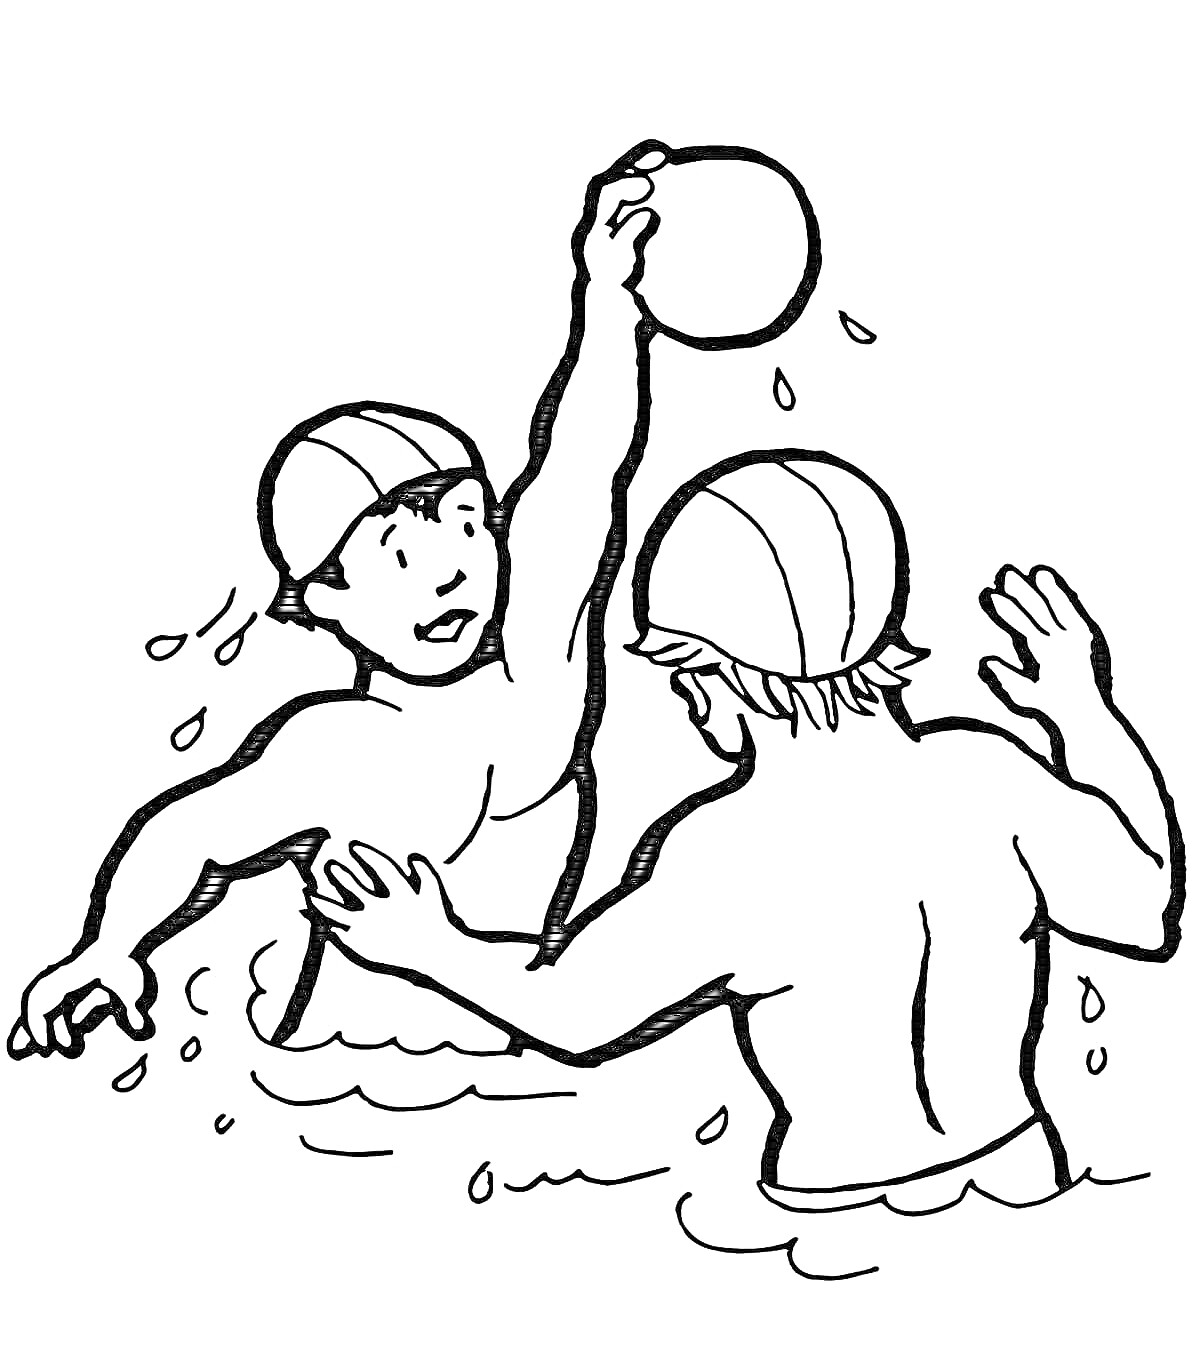 Раскраска Два человека в бассейне, играющие в водное поло (один человек держит мяч в поднятой руке, оба в купальных шапках, на фоне вода)